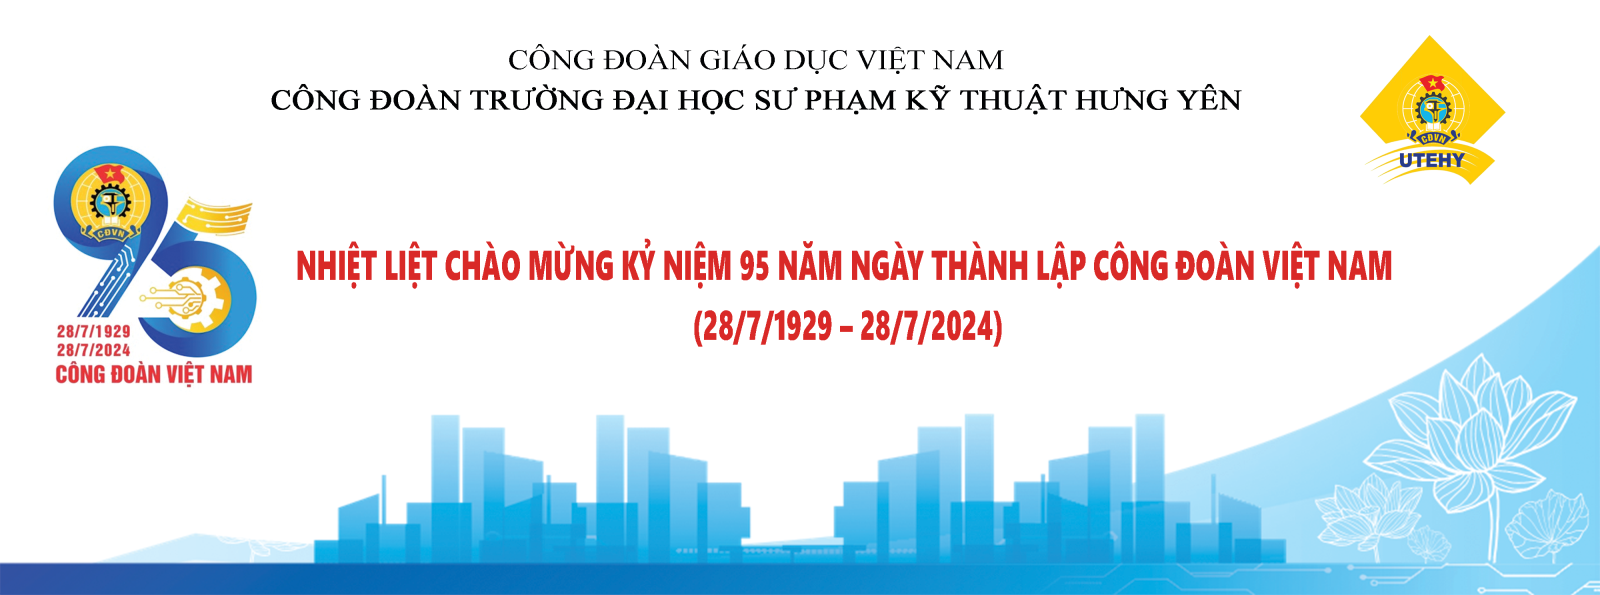 95 năm công đoàn Việt Nam